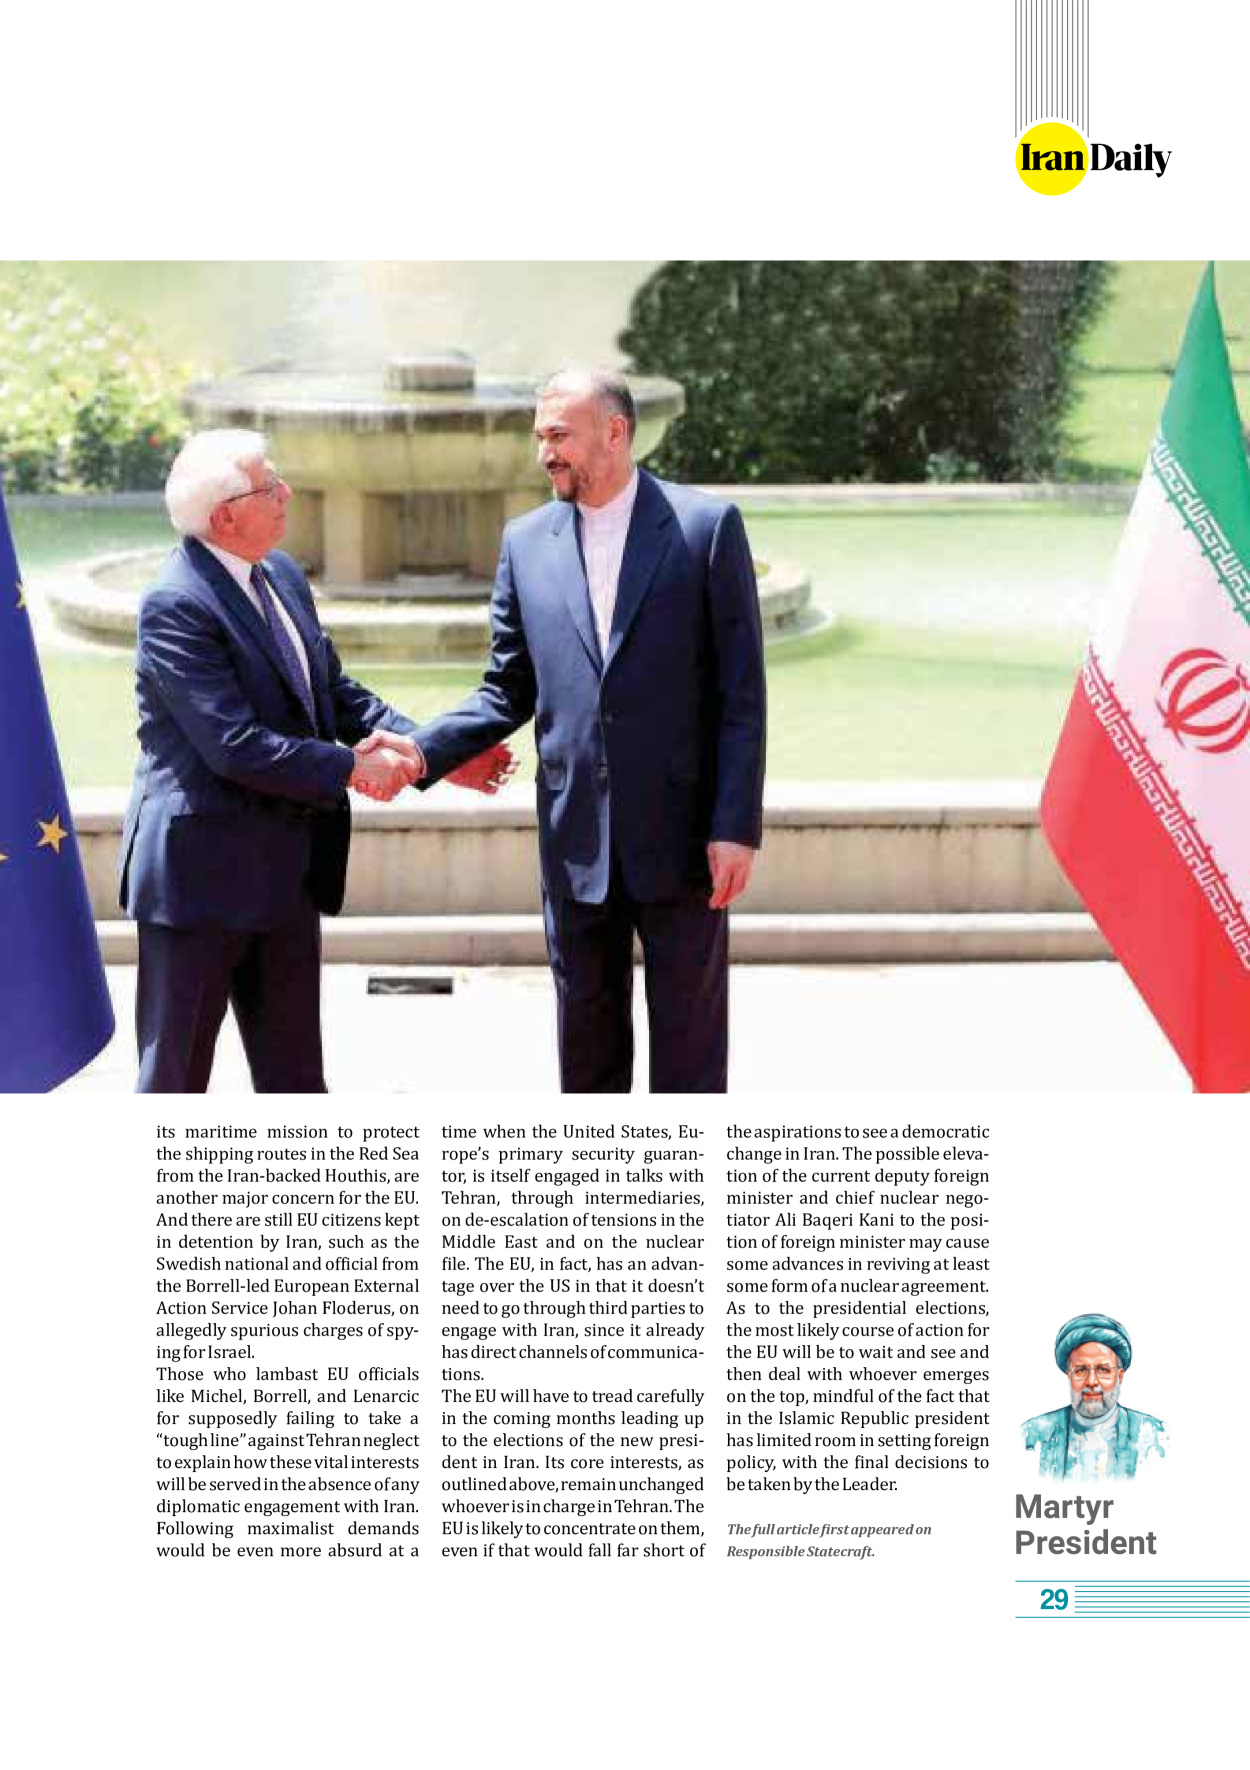 روزنامه ایران - ویژه نامه وِزه نامه چهلم شهید رییسی( انگلیسی) - ۱۷ تیر ۱۴۰۳ - صفحه ۲۹